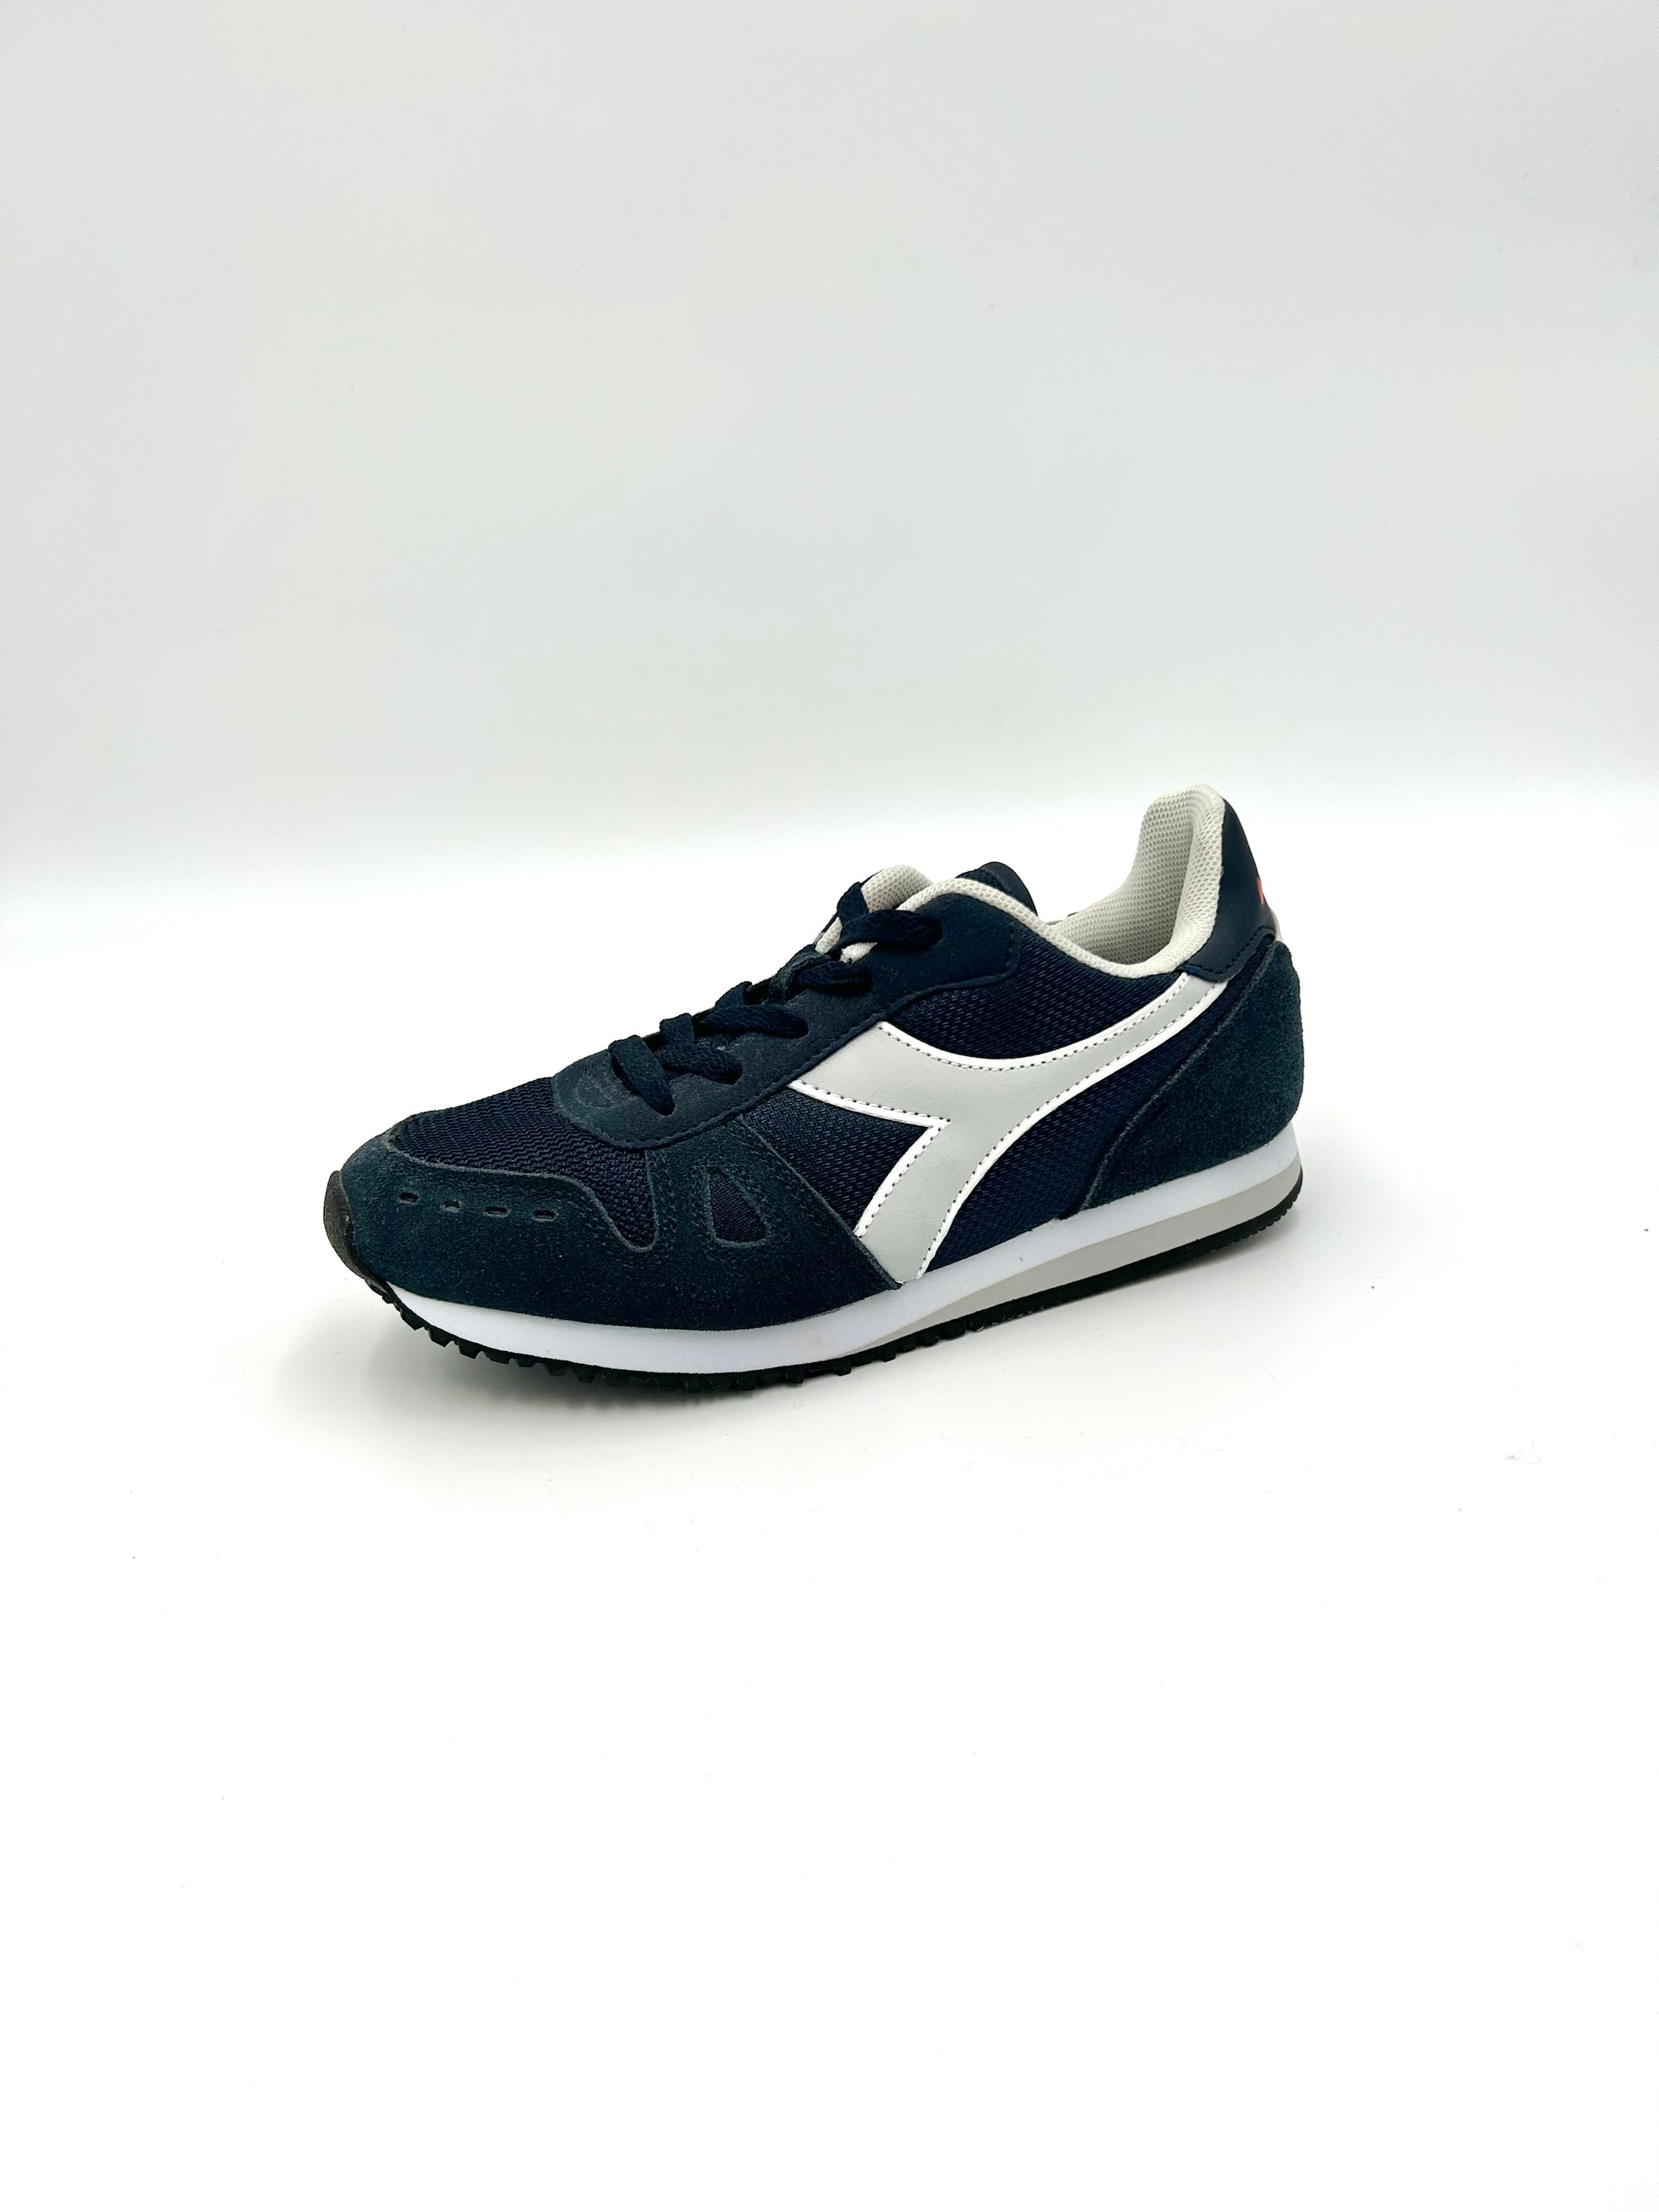 Diadora Sneakers Simple run GS - blue and grey - Diadora